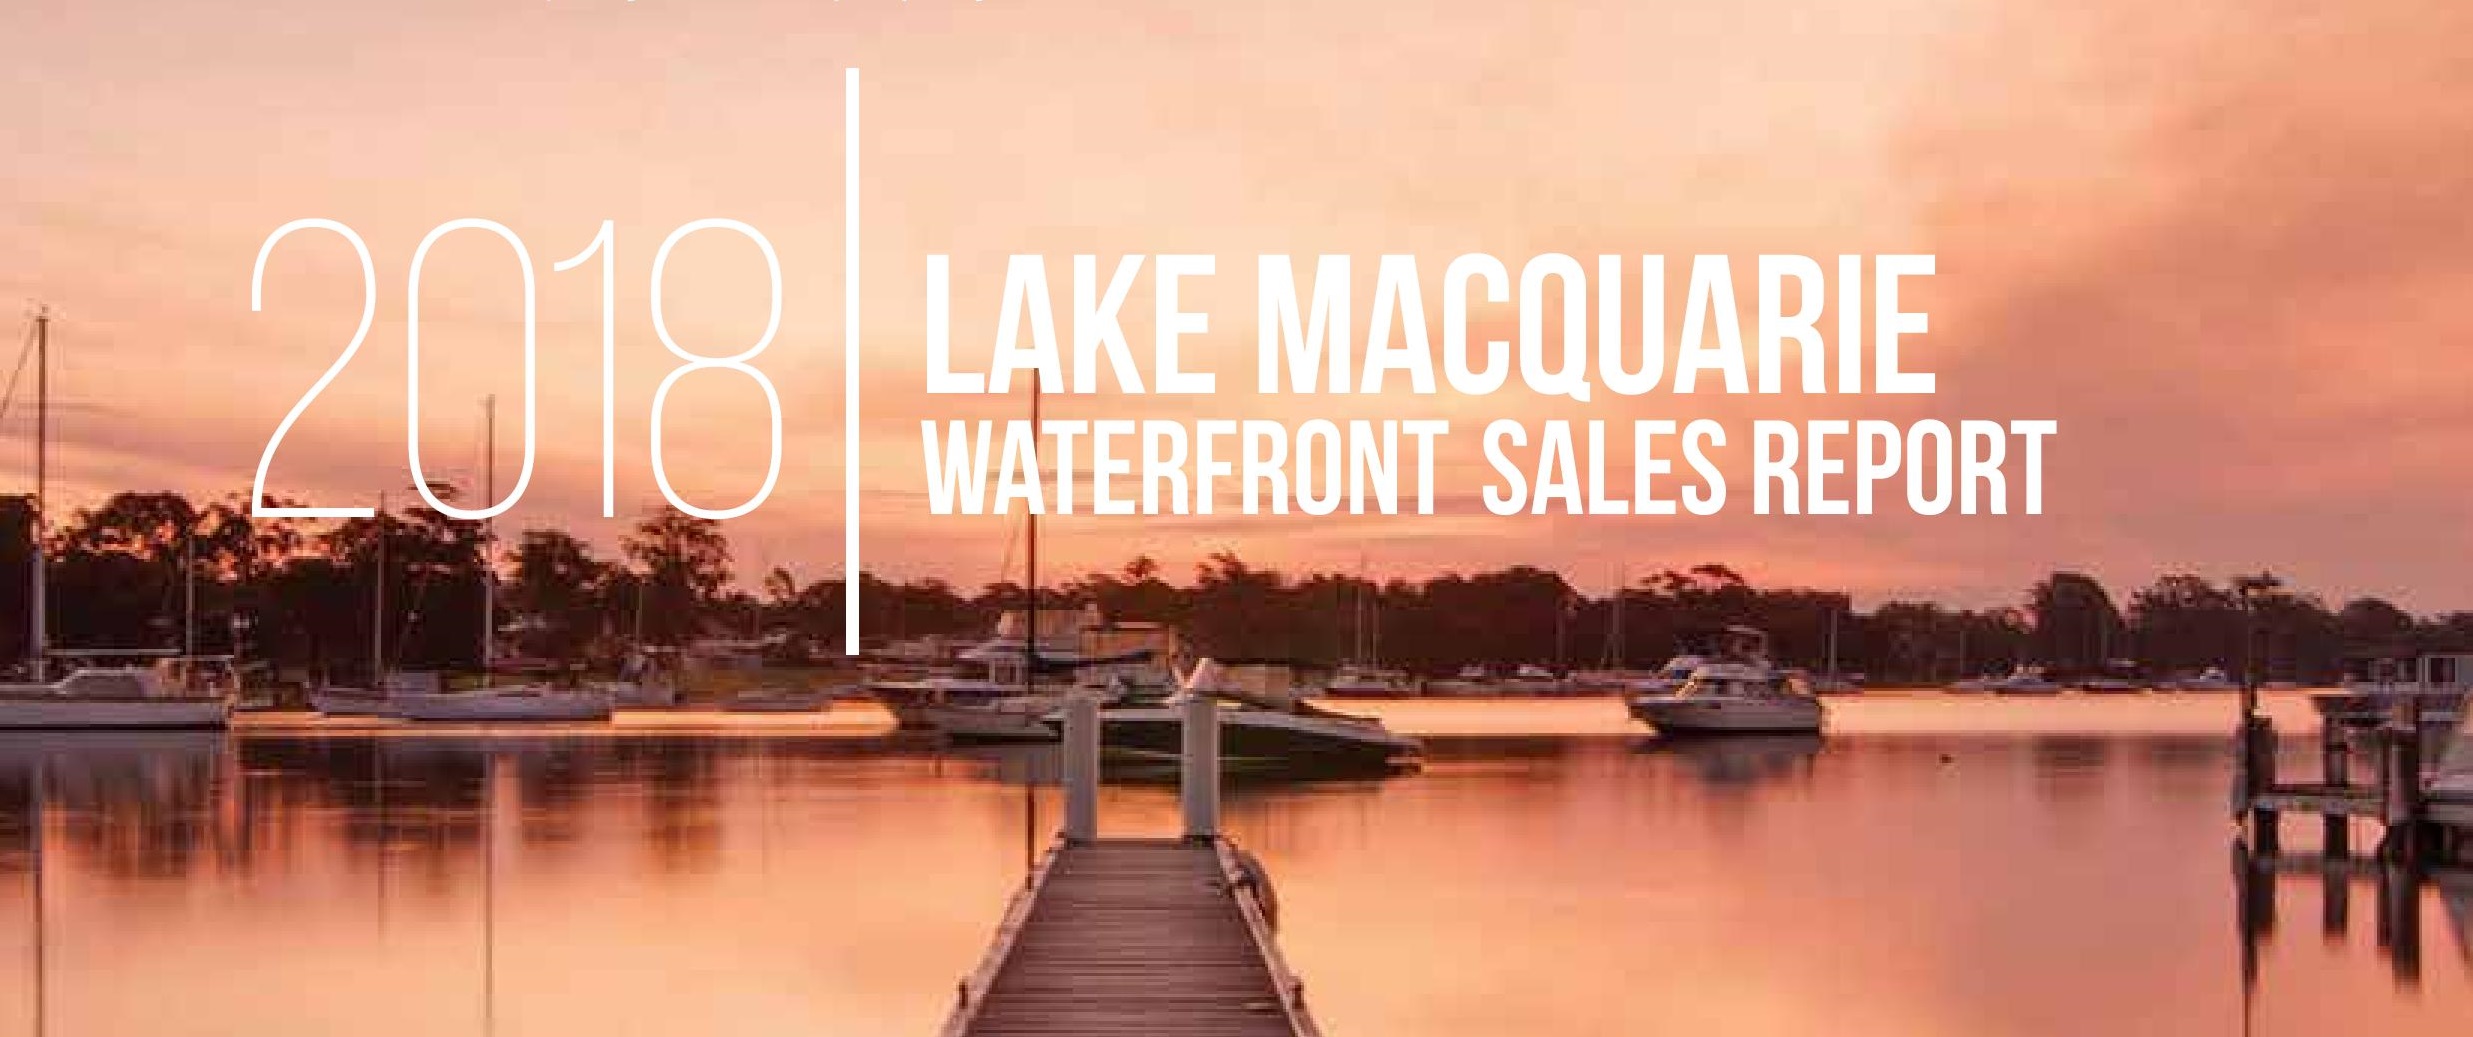 Lake Macquarie waterfront sales report